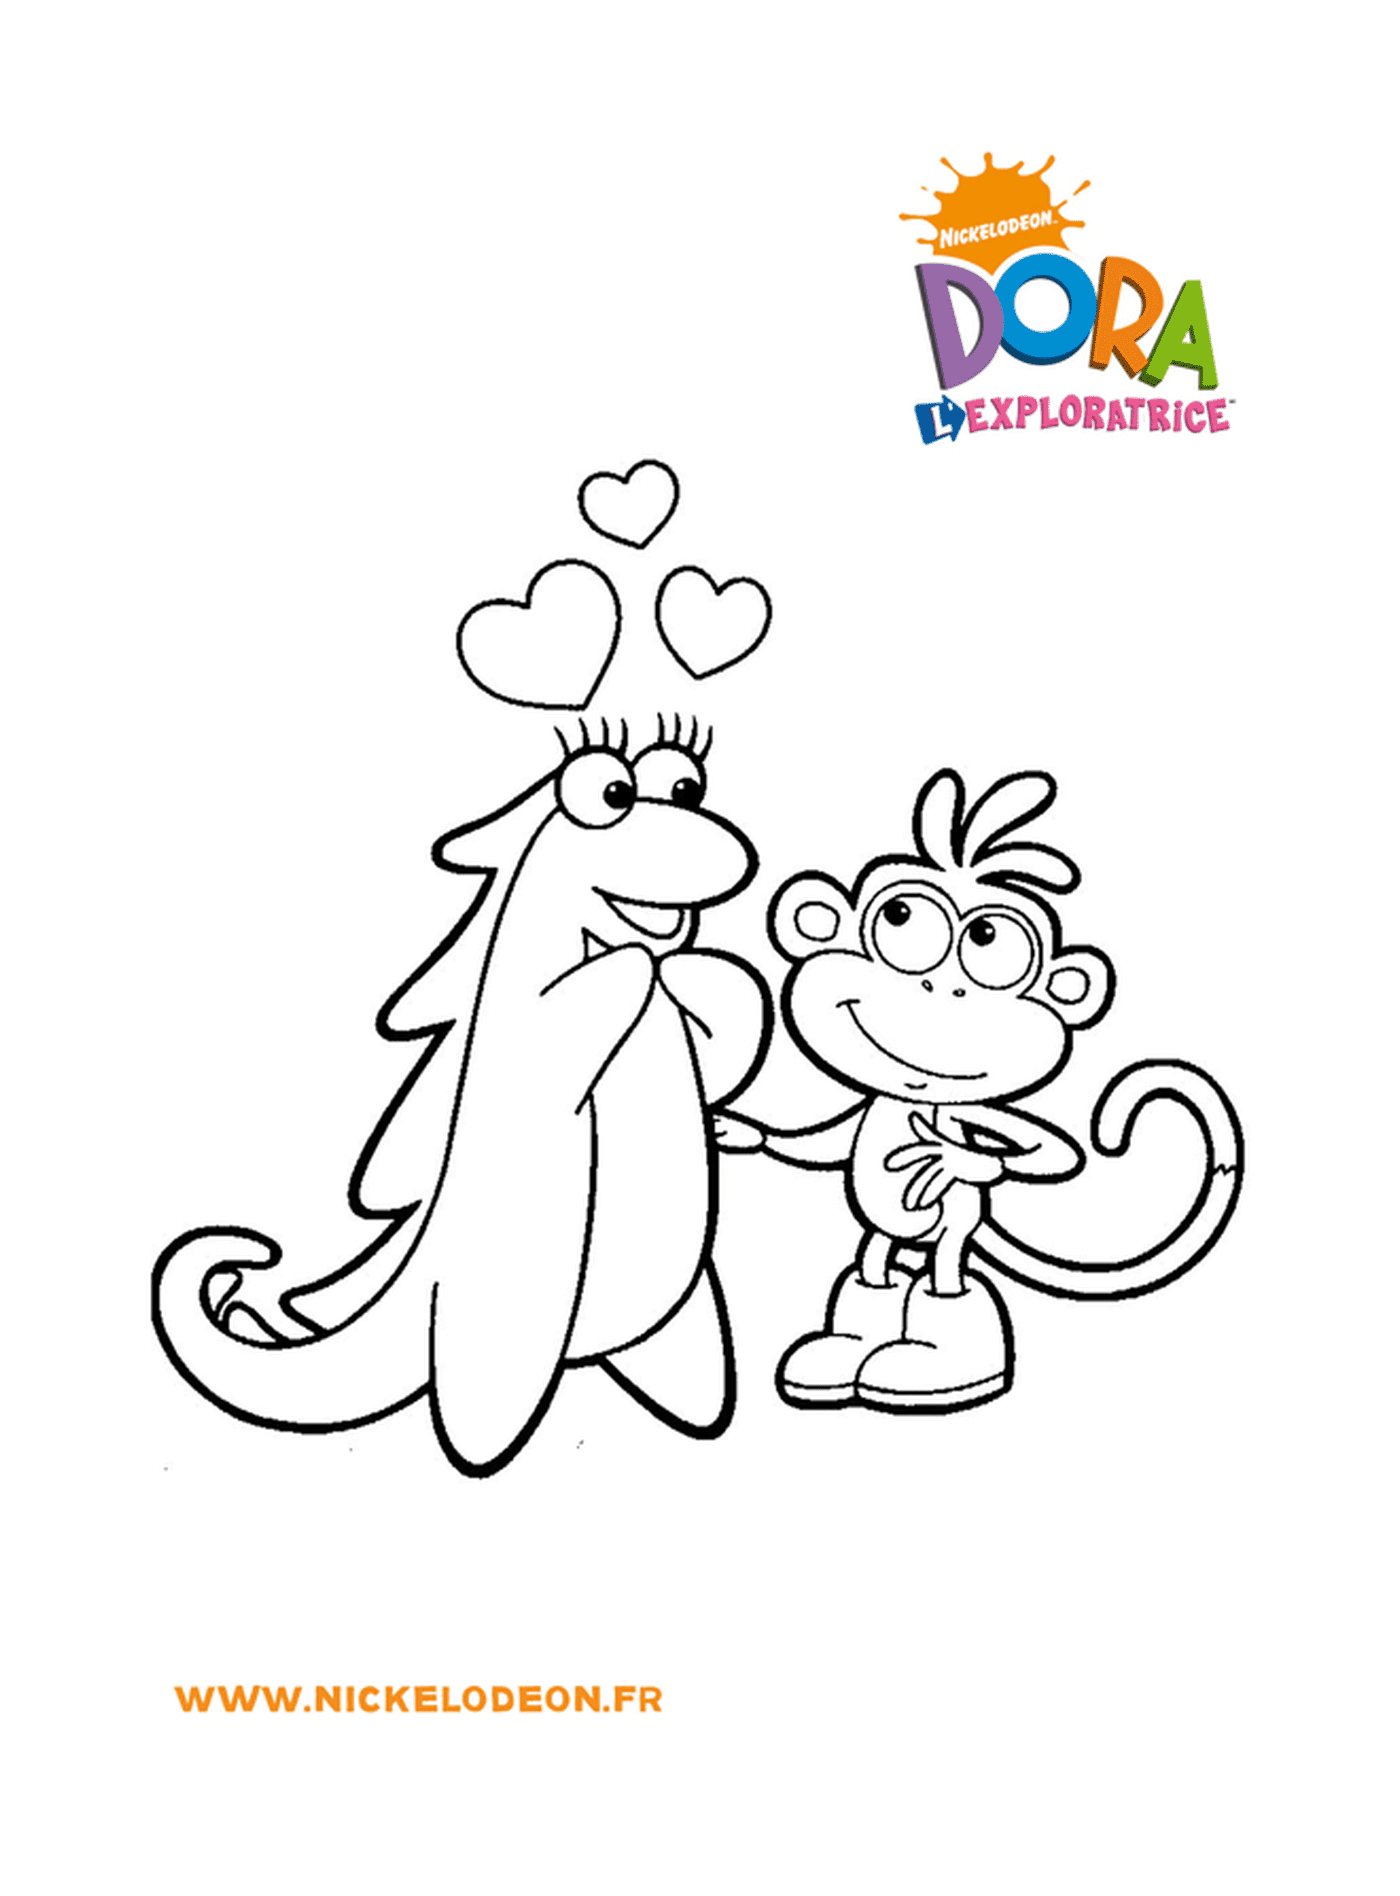  Dora y Babouche descubren el amor en el corazón de sus aventuras 